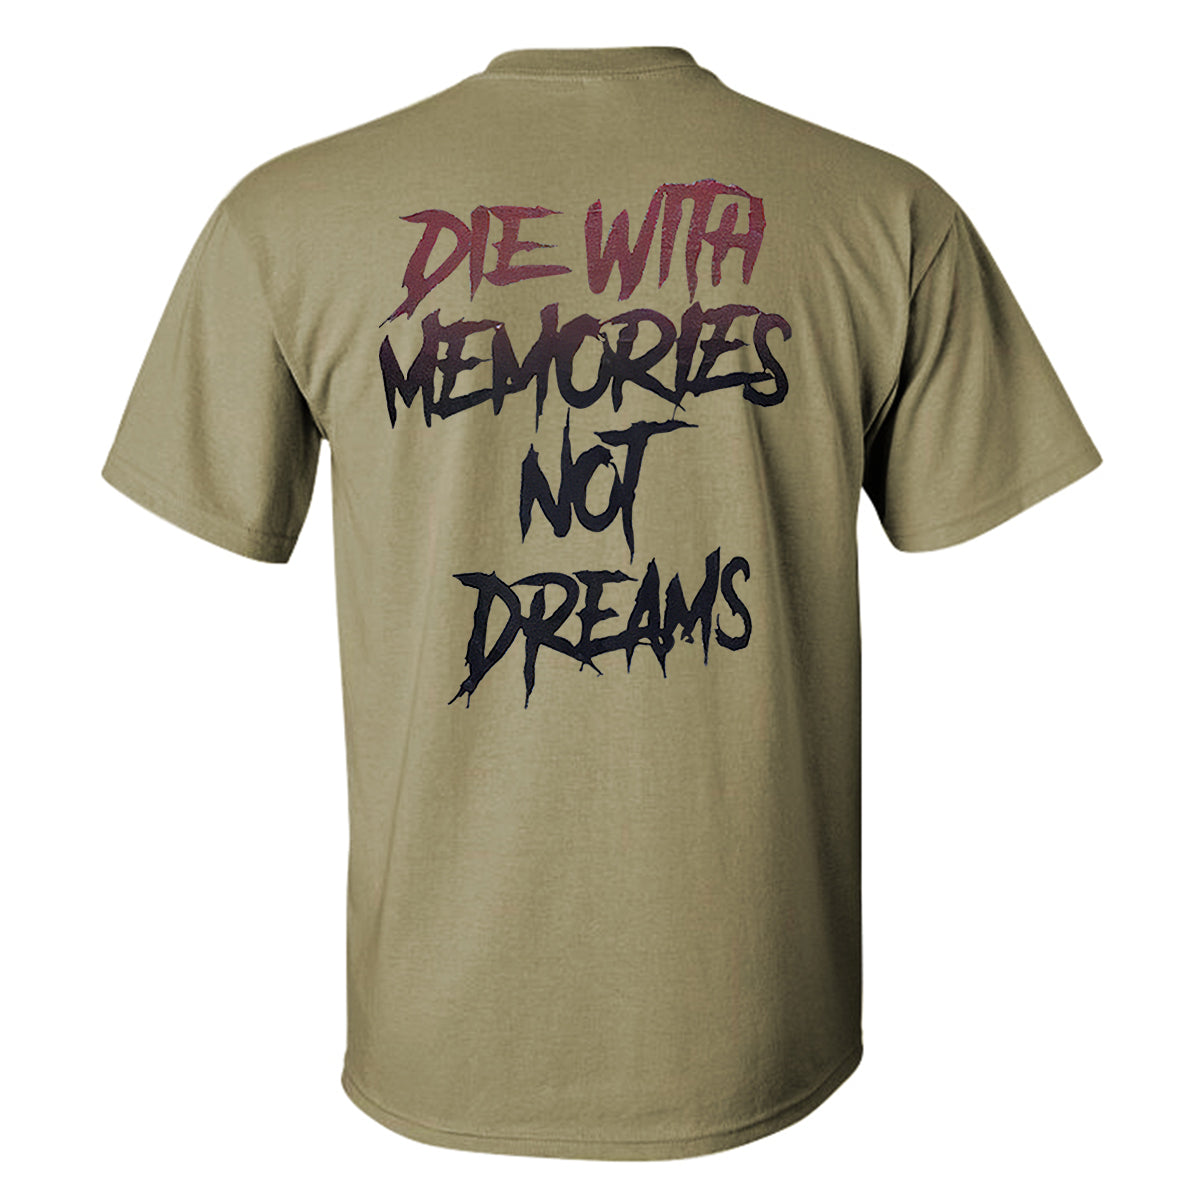 Die With Memories Not Dreams Printed T-shirt